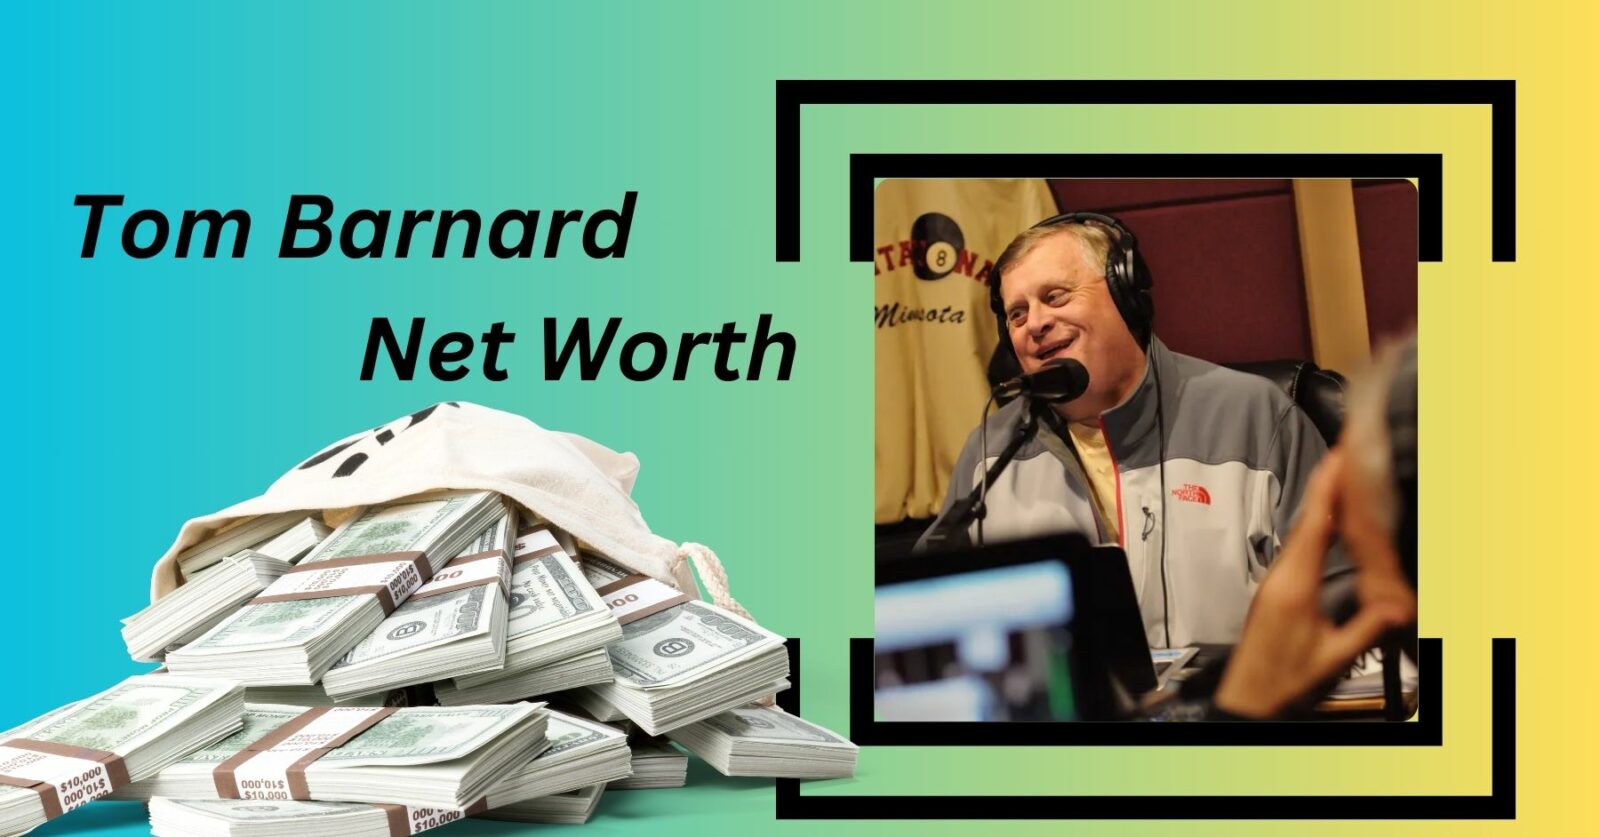 Tom Barnard Net Worth